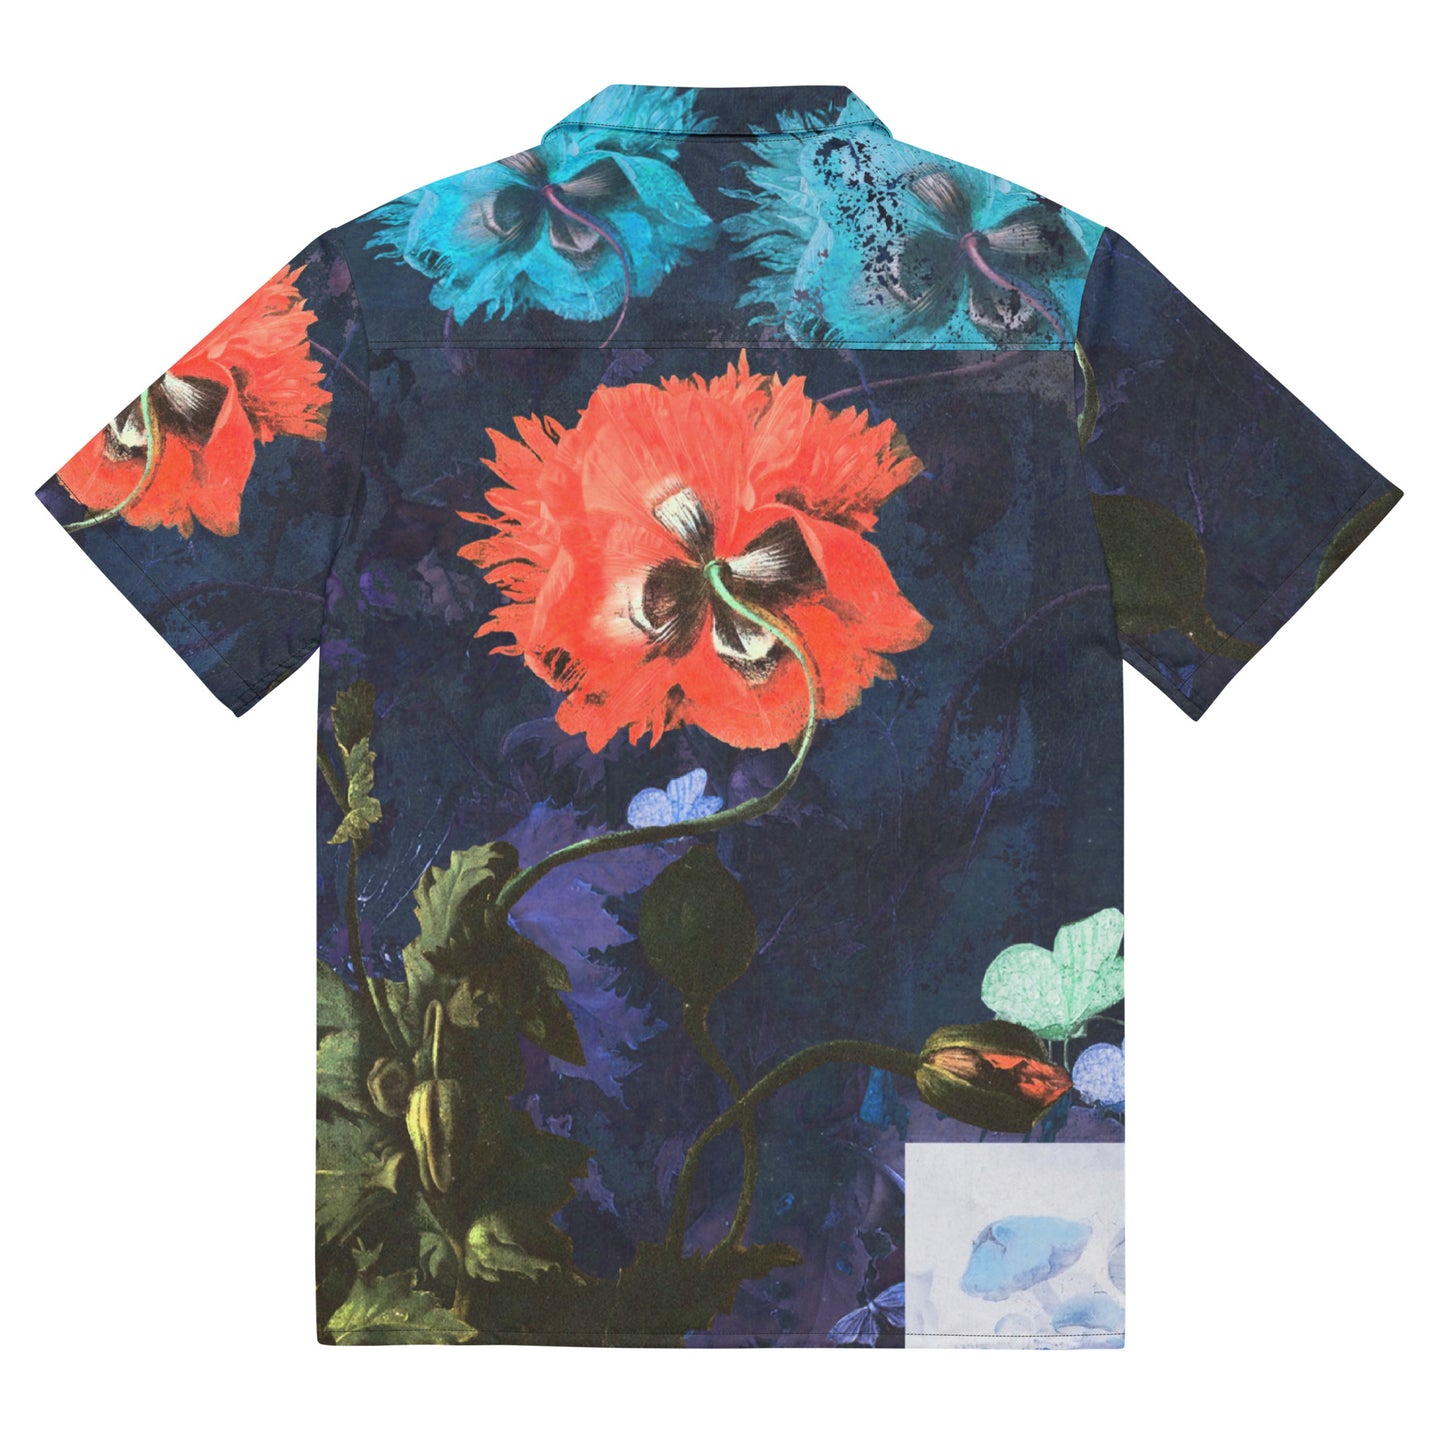 Exquisite Floral Unisex button down shirt